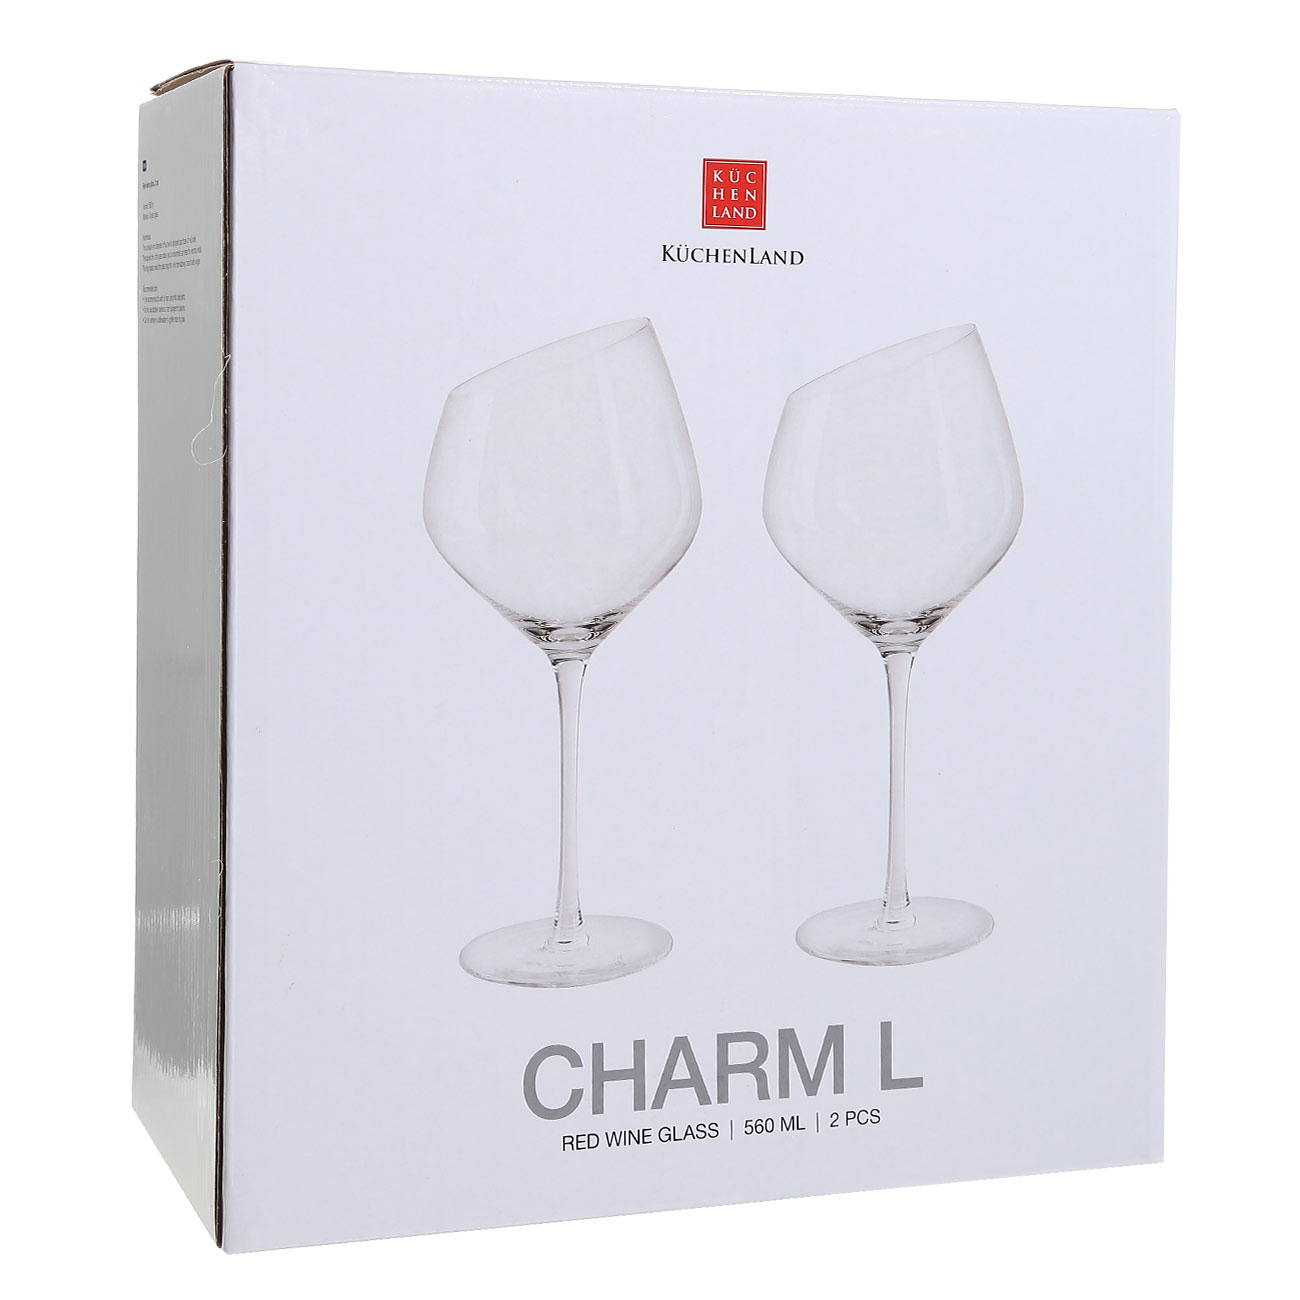 Red wine glass, 560 ml, 2 pcs, glass, Charm L изображение № 2